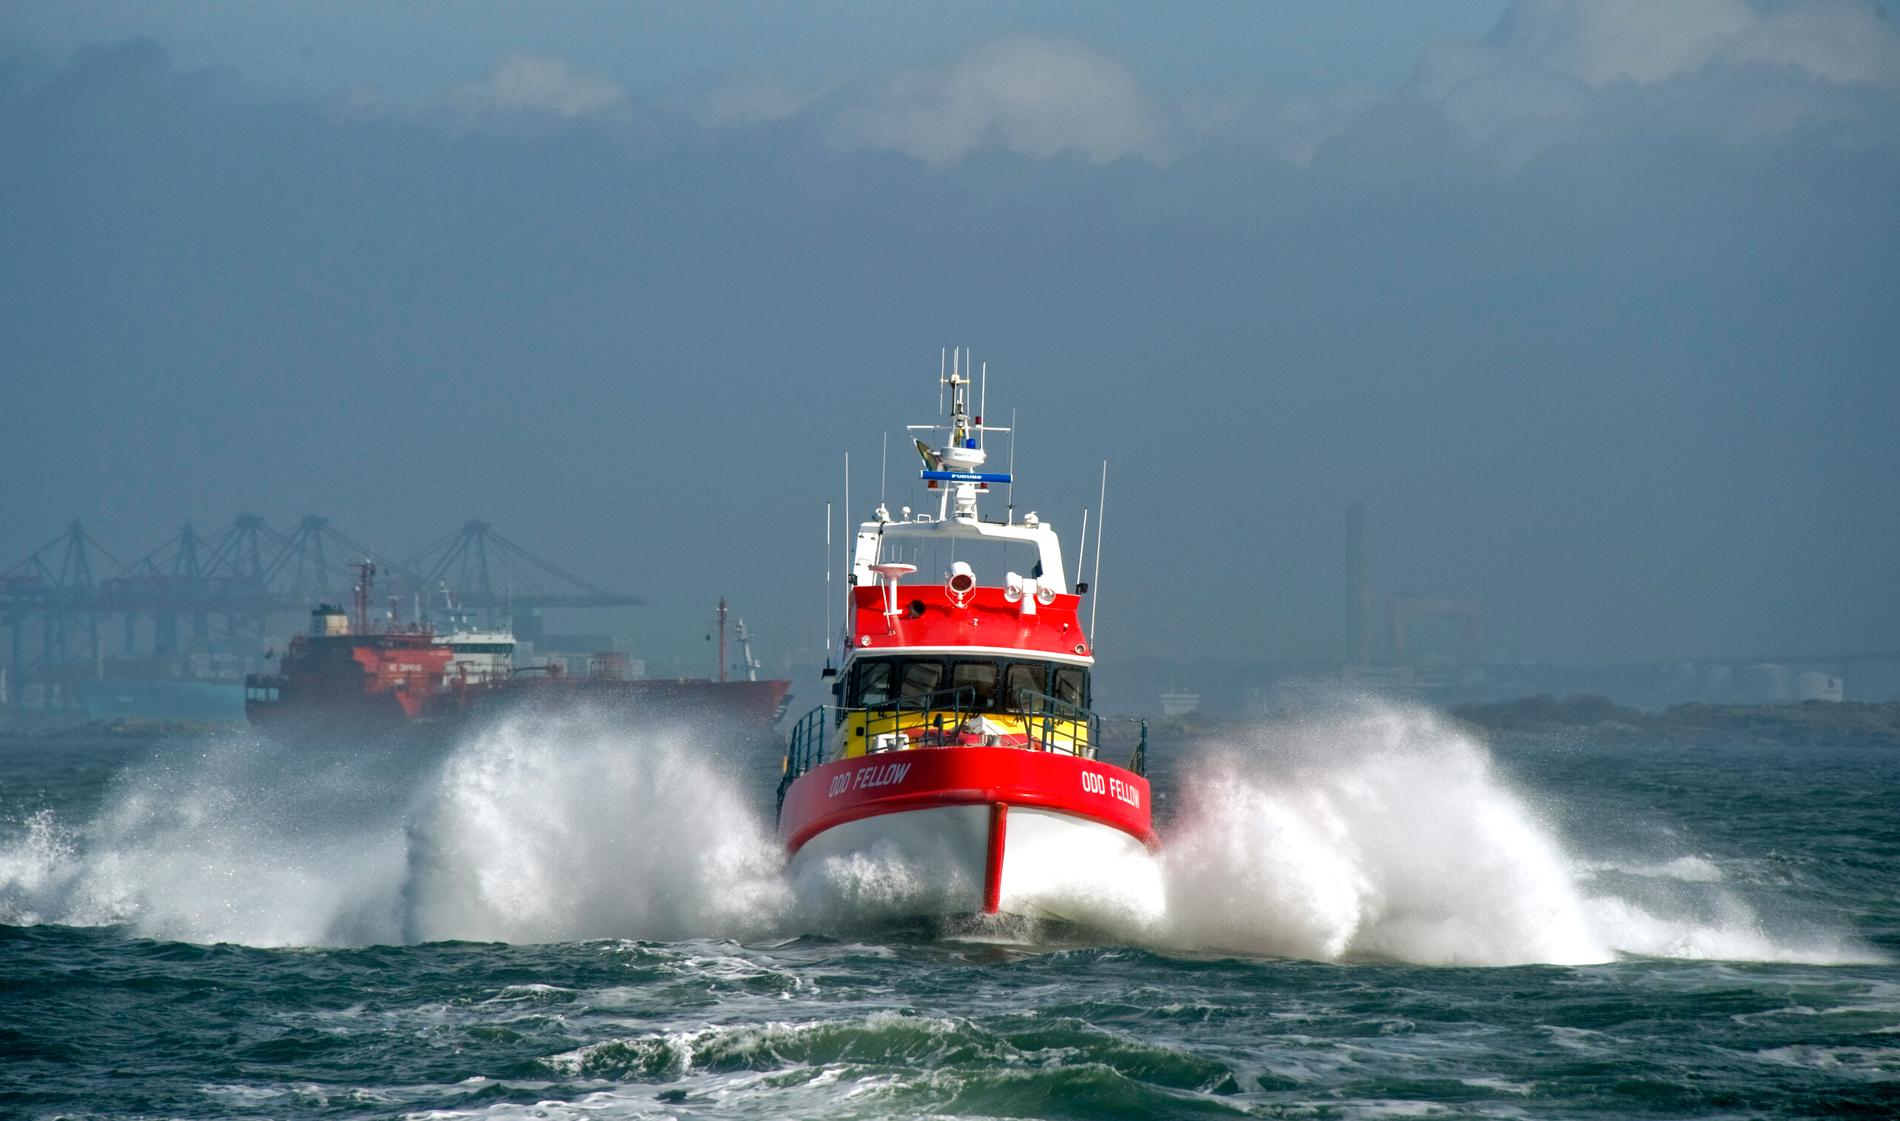 Sjöräddningssällskapet skickar två räddningsbåtar till Medelhavet – redo att hjälpa dygnet runt.